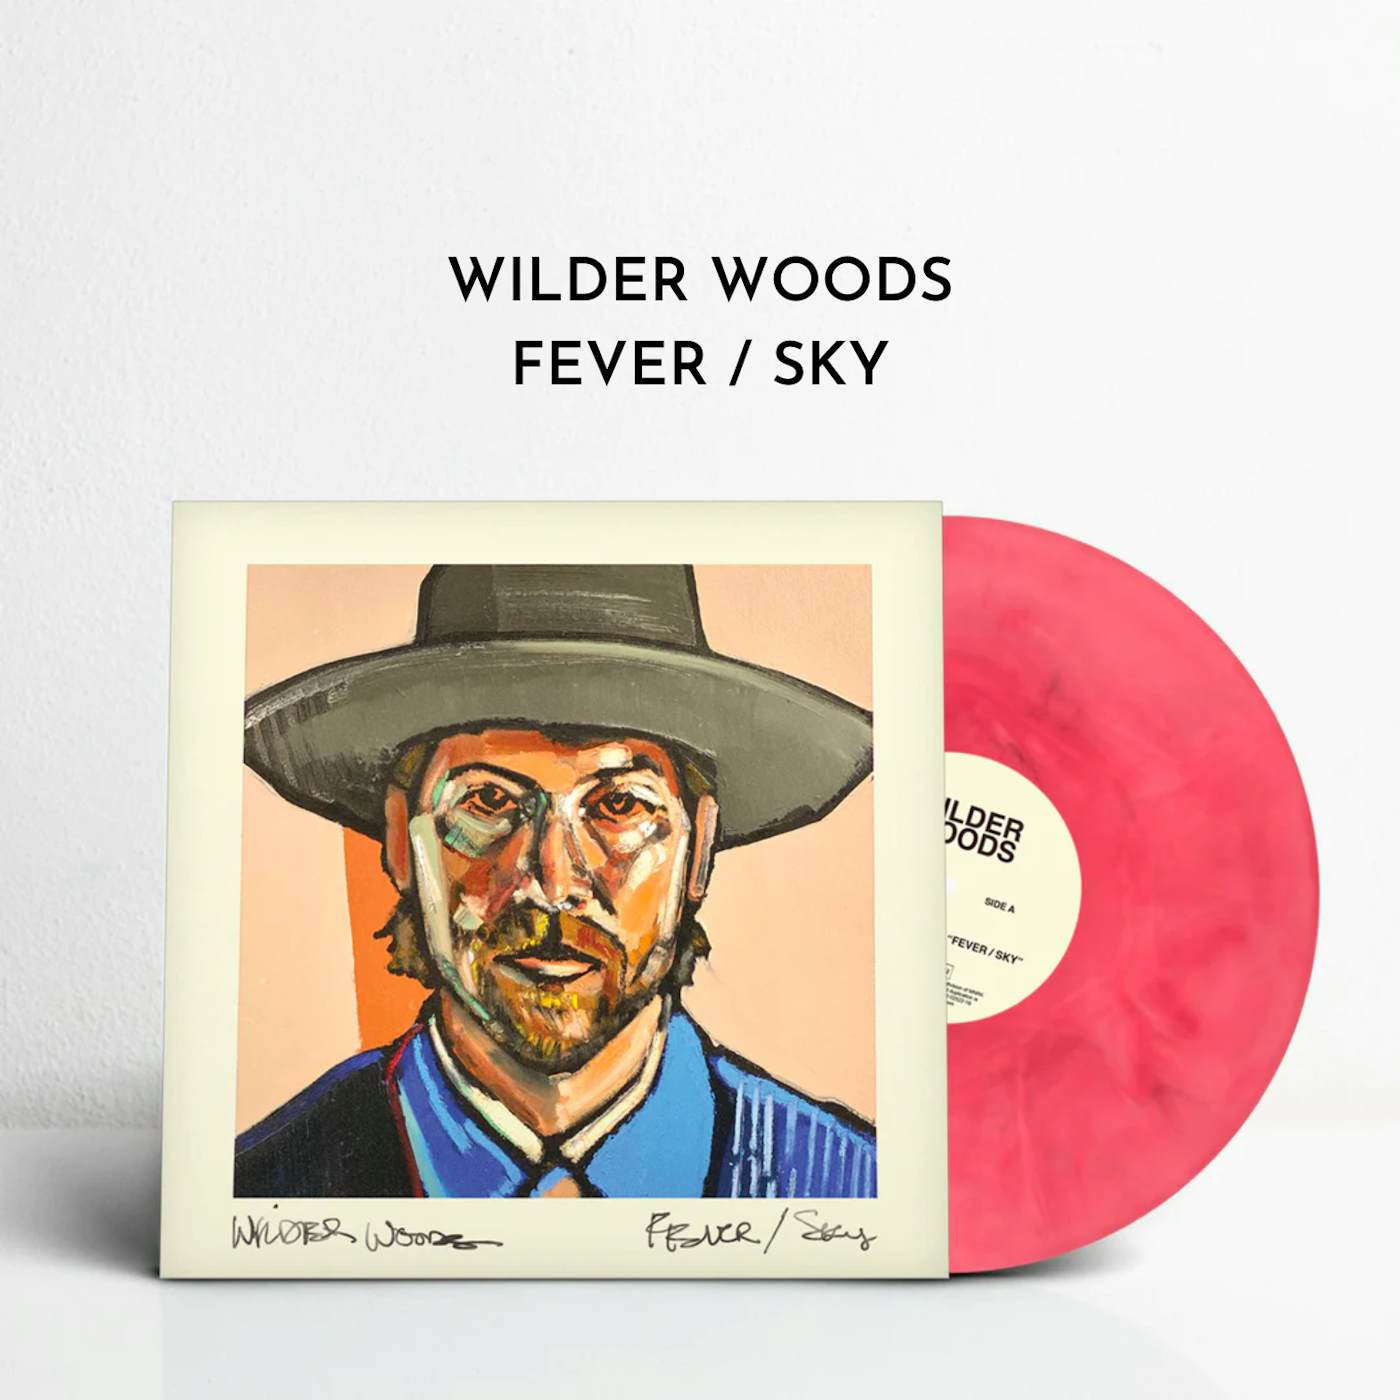 Wilder Woods FEVER / SKY (Ltd. Edition Vinyl)